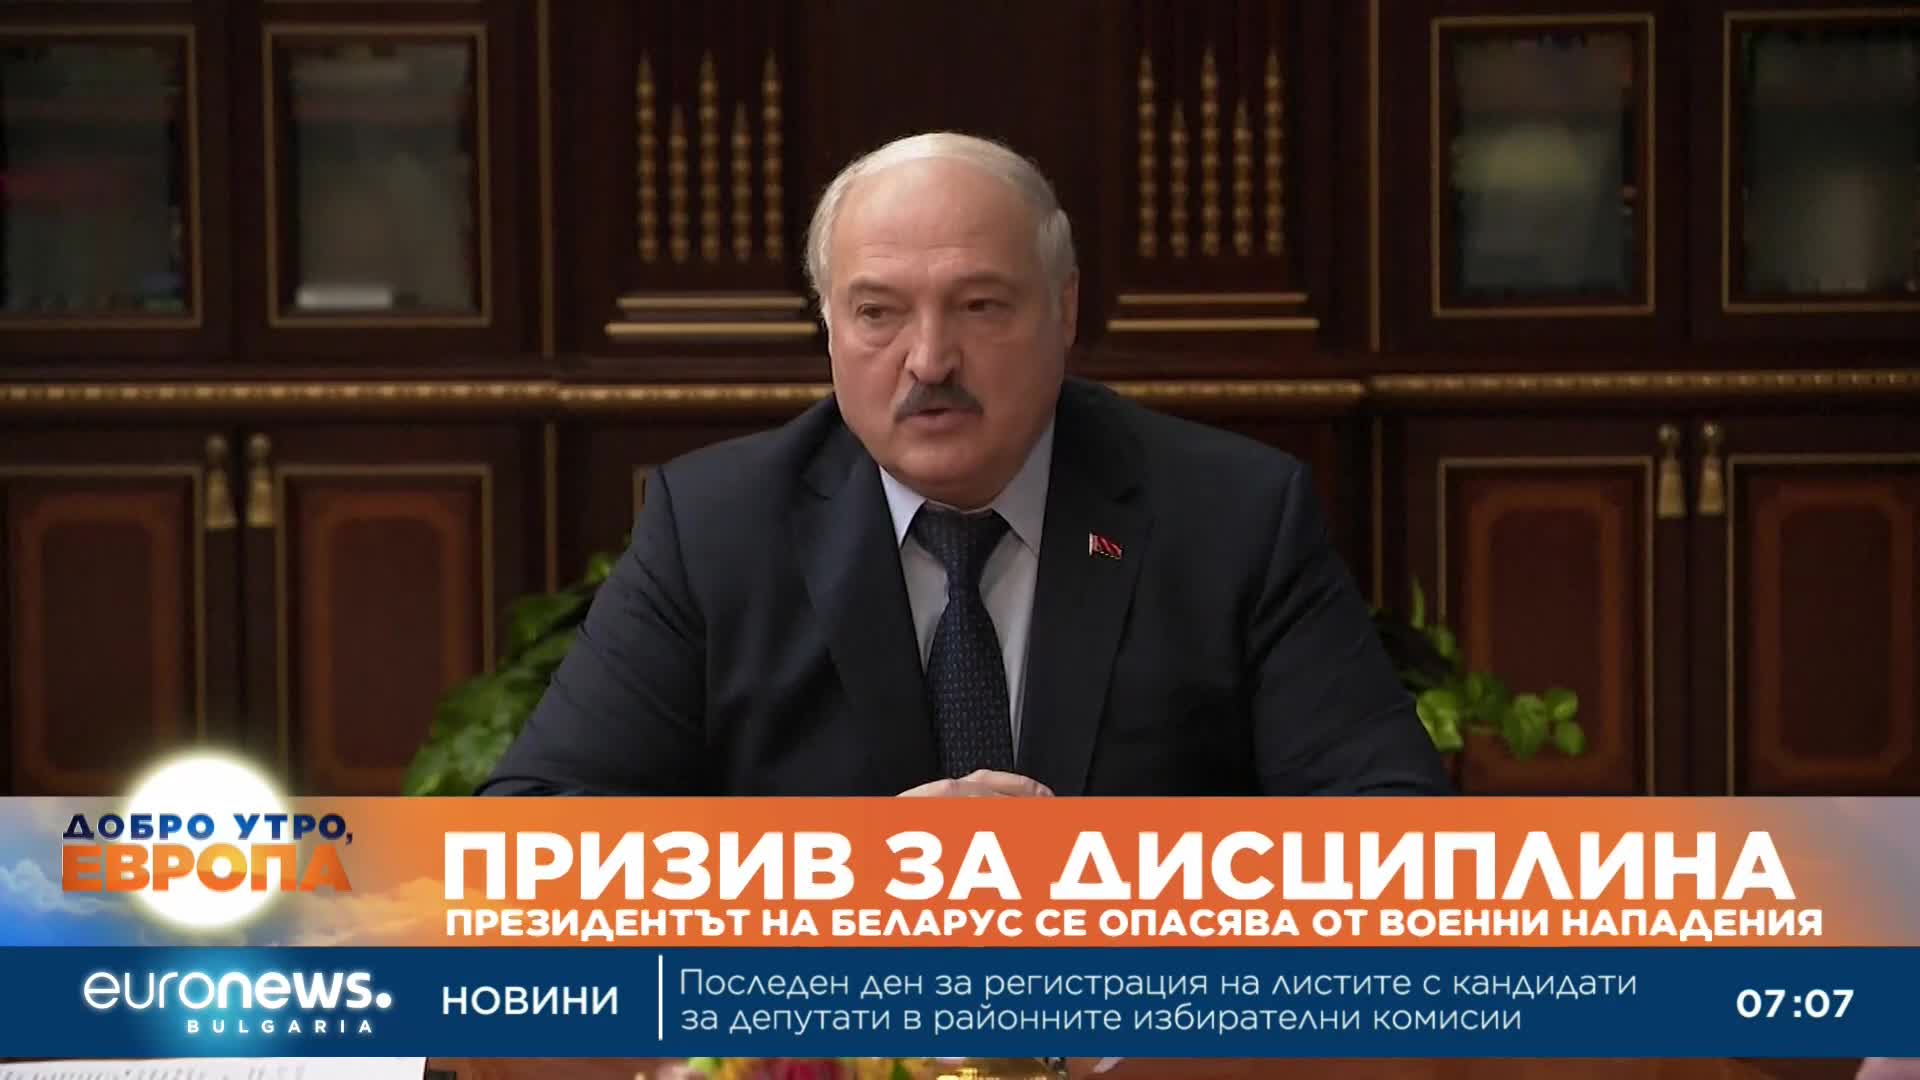 Президентът на Беларус се опасява от военни нападения